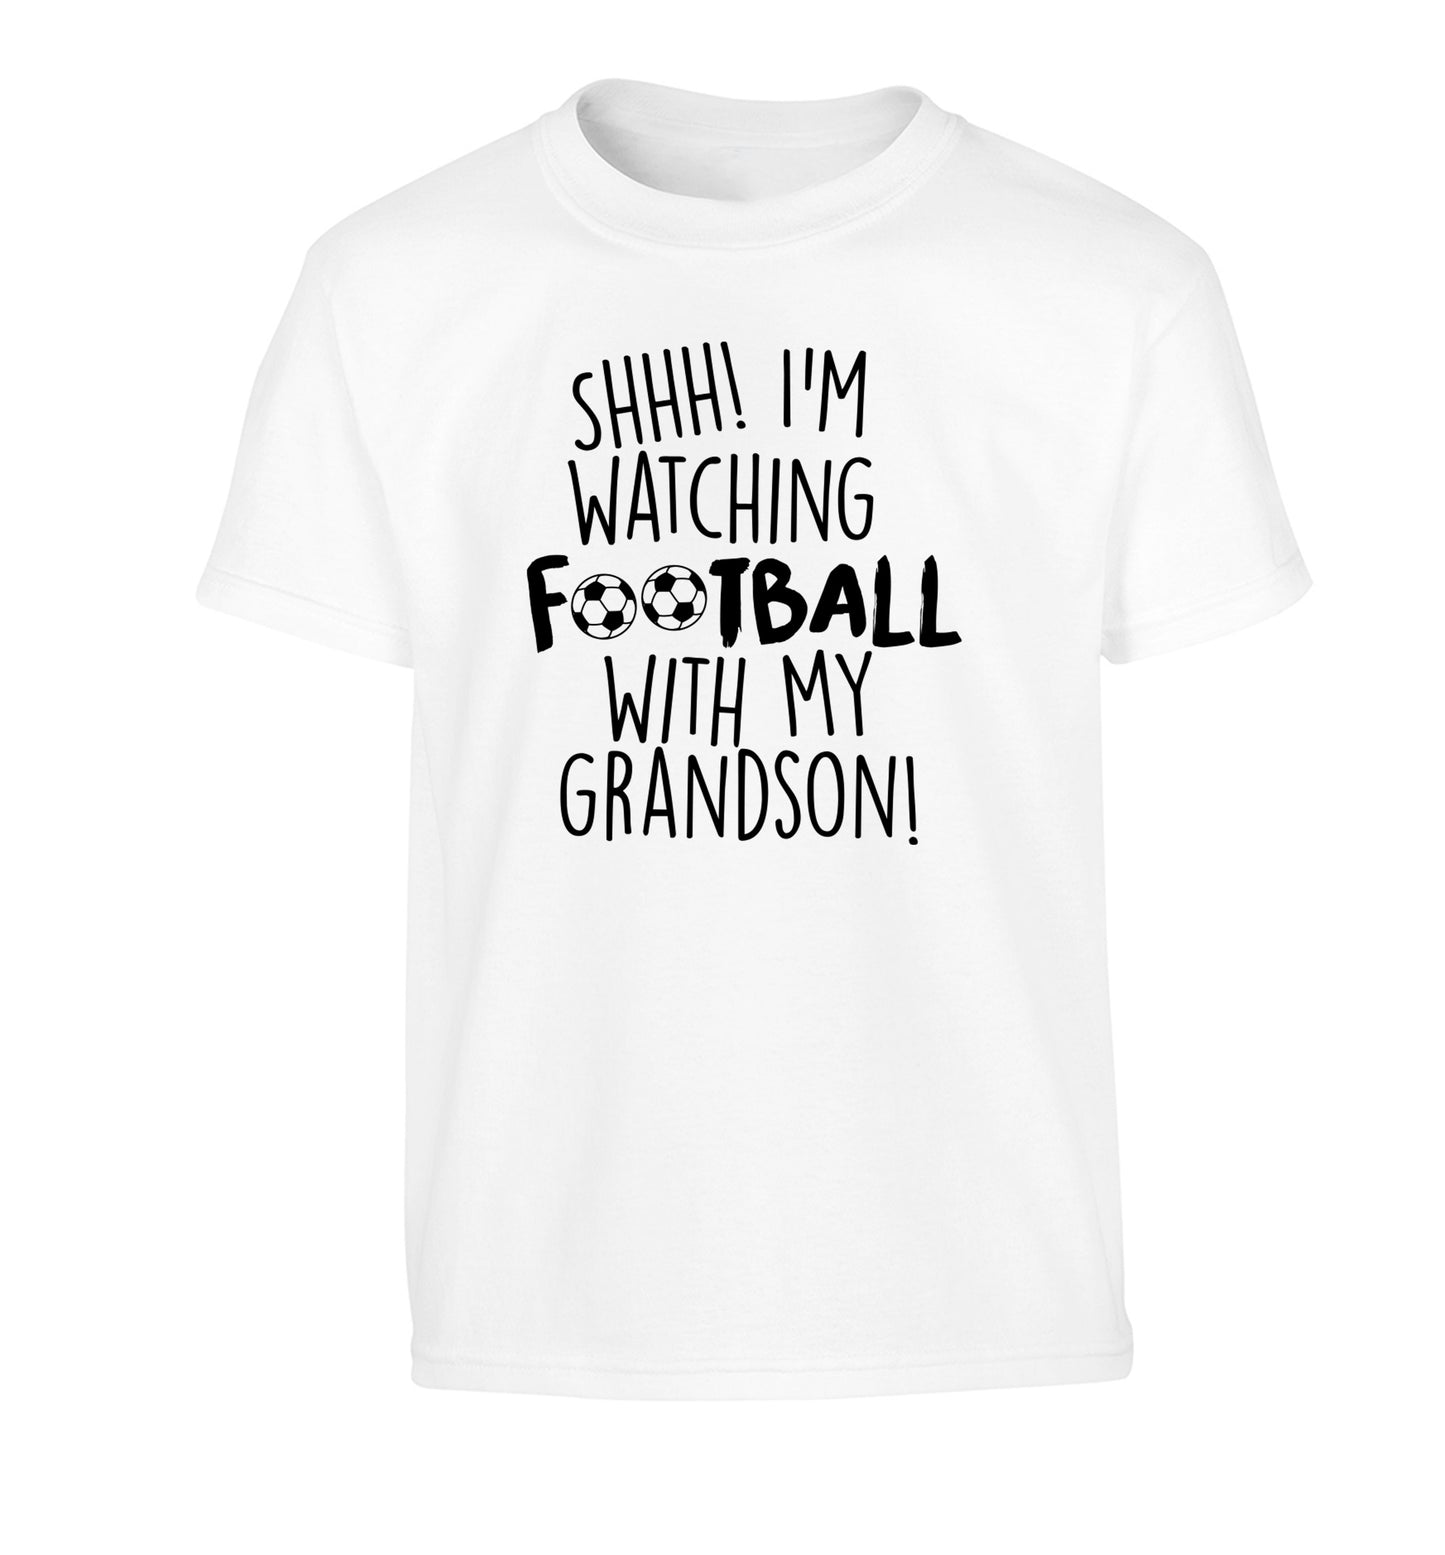 Shhh I'm watching football with my grandson Children's white Tshirt 12-14 Years